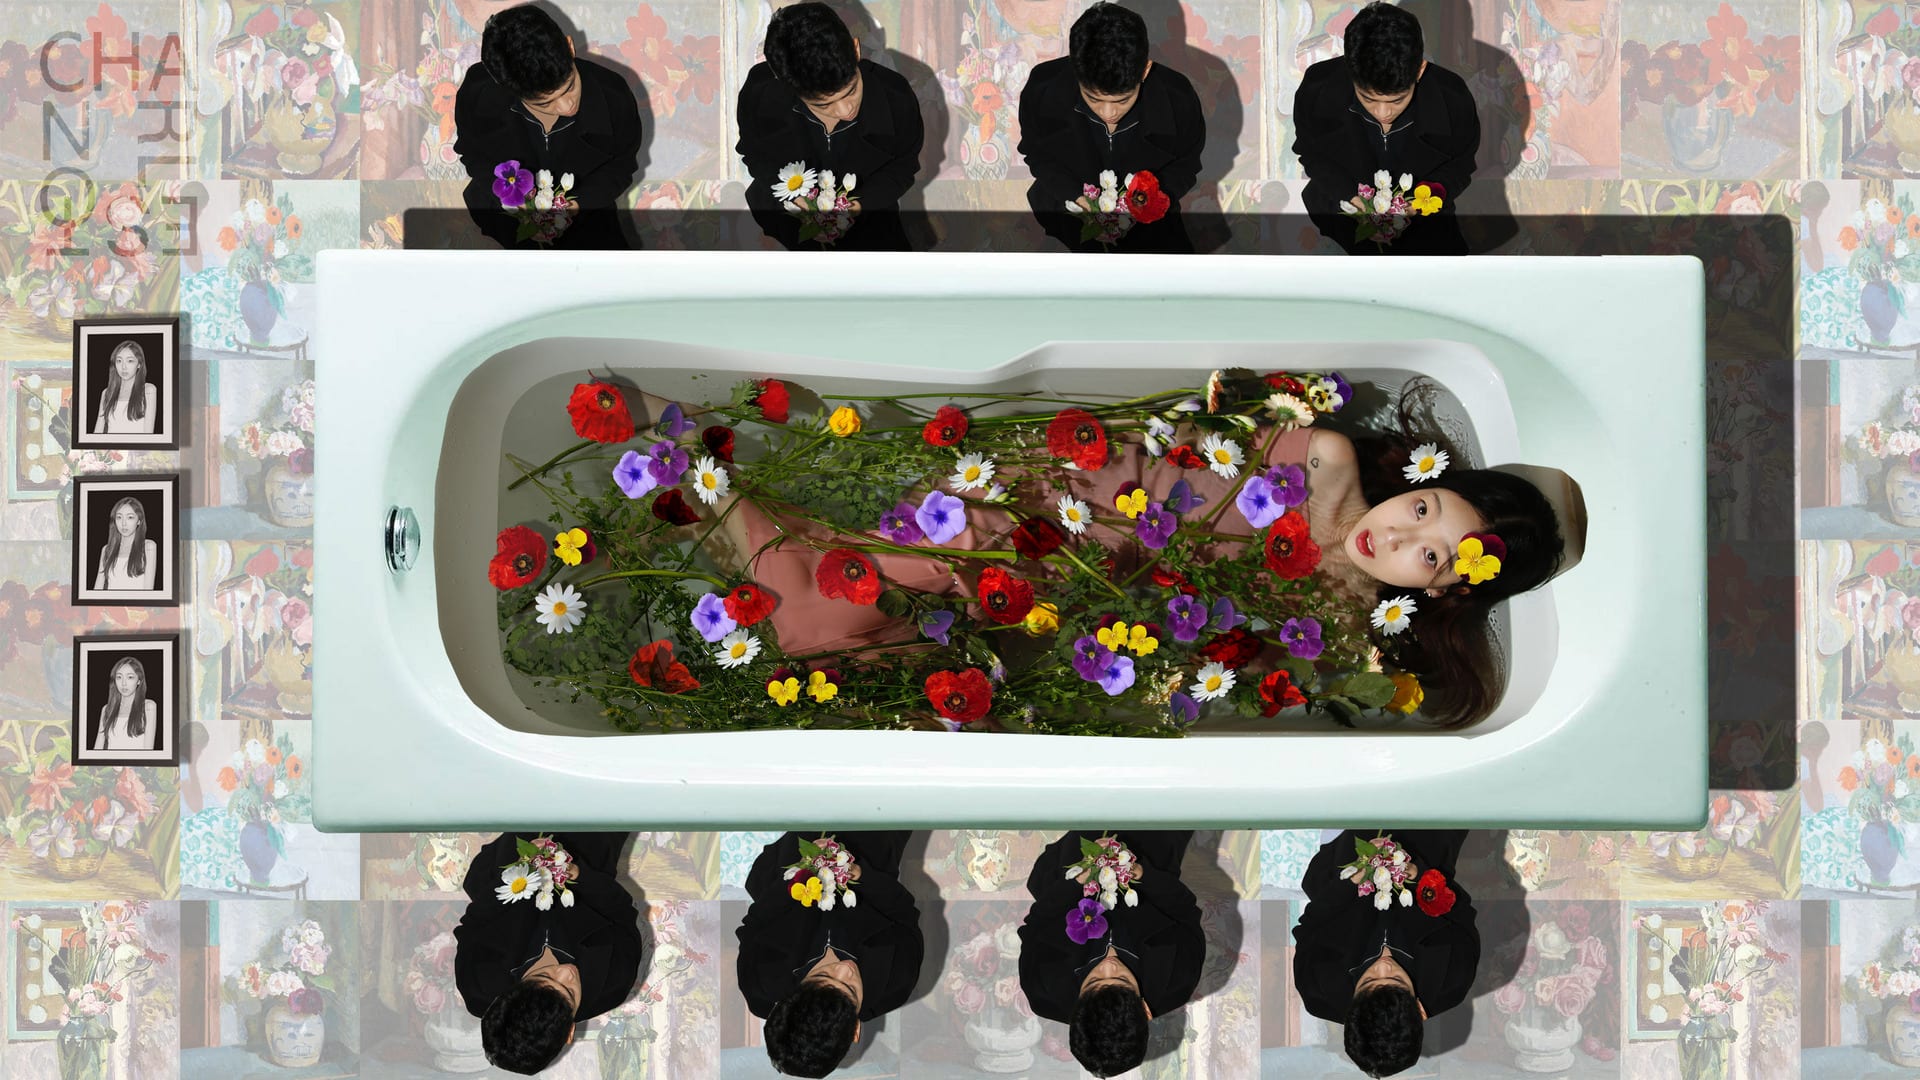 Fake funeral image